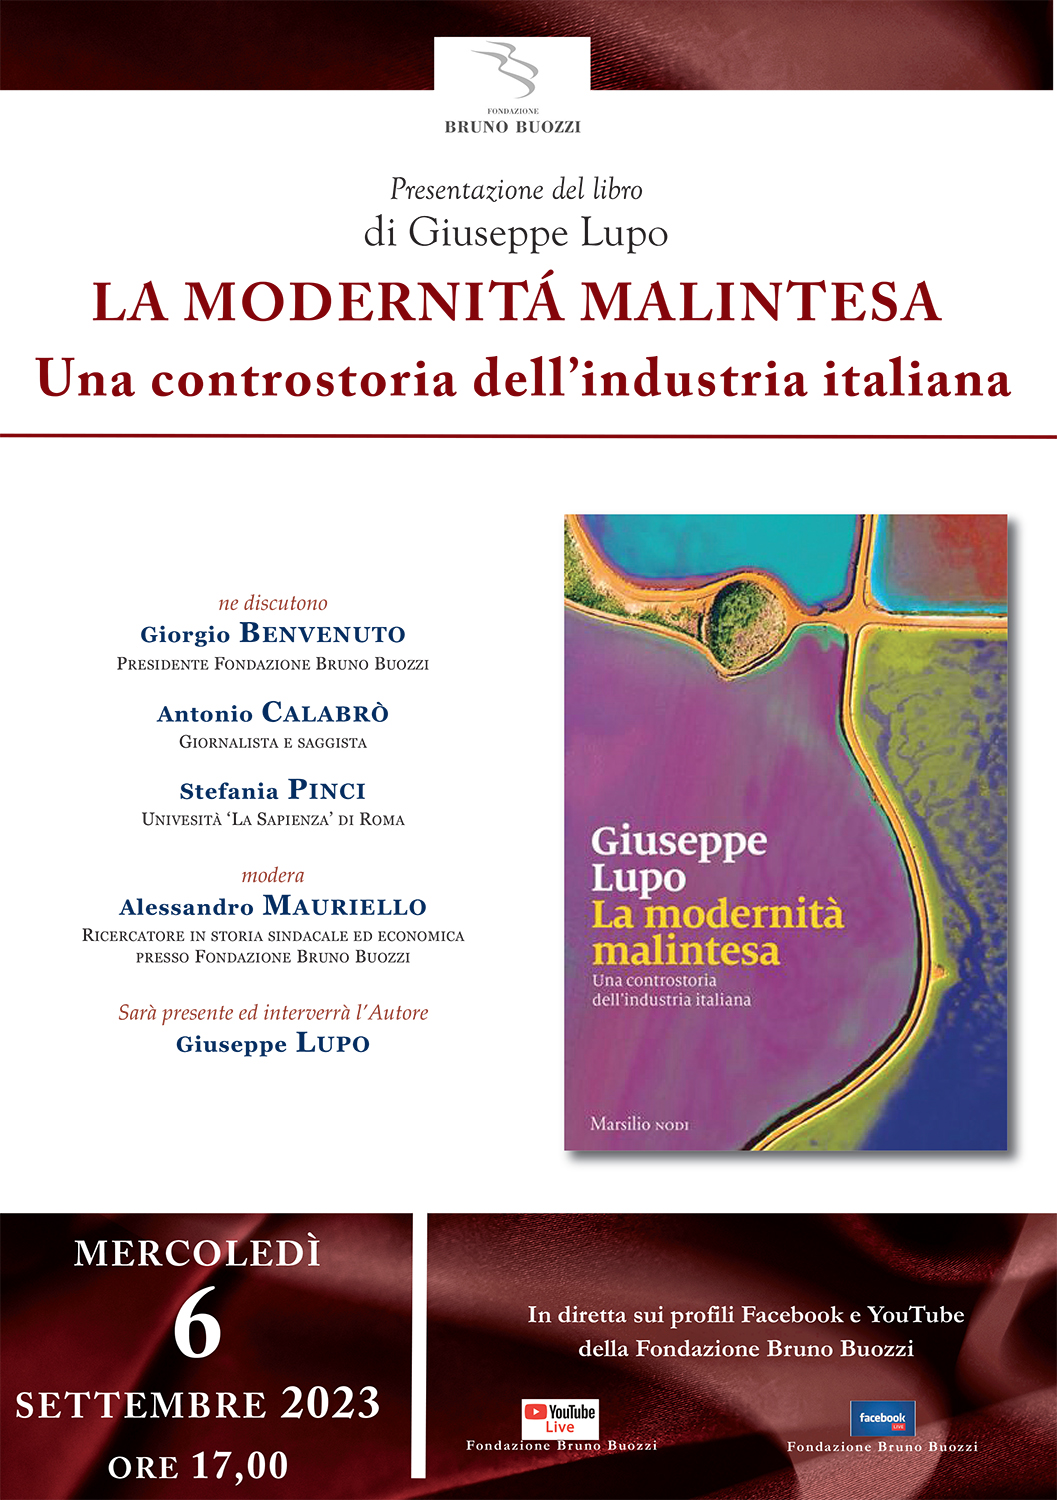 Mercoledì 6 settembre 2023, ore 17,00. Presentazione del libro di Giuseppe Lupo ’La modernità malintesa. Una controstoria dell’industria italiana’